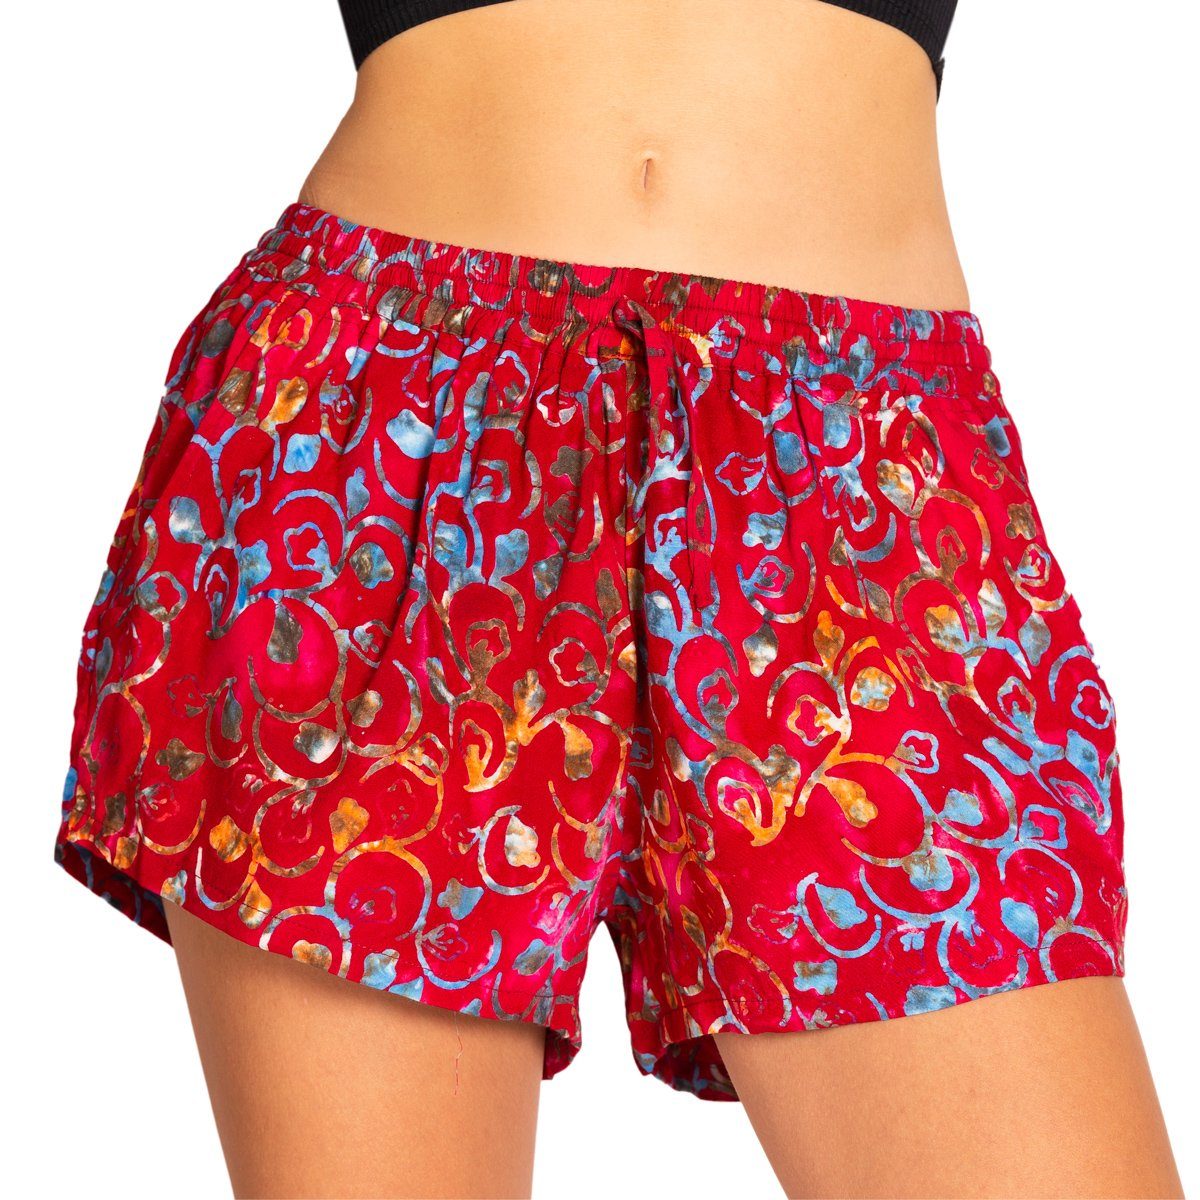 PANASIAM Strandshorts Damen Shorts Tragen Damenshorts B507 farbecht Meditation Yoga Wachsbatik zu angenehm und kurze Sporthose oder red-floral Relaxshorts für Strand